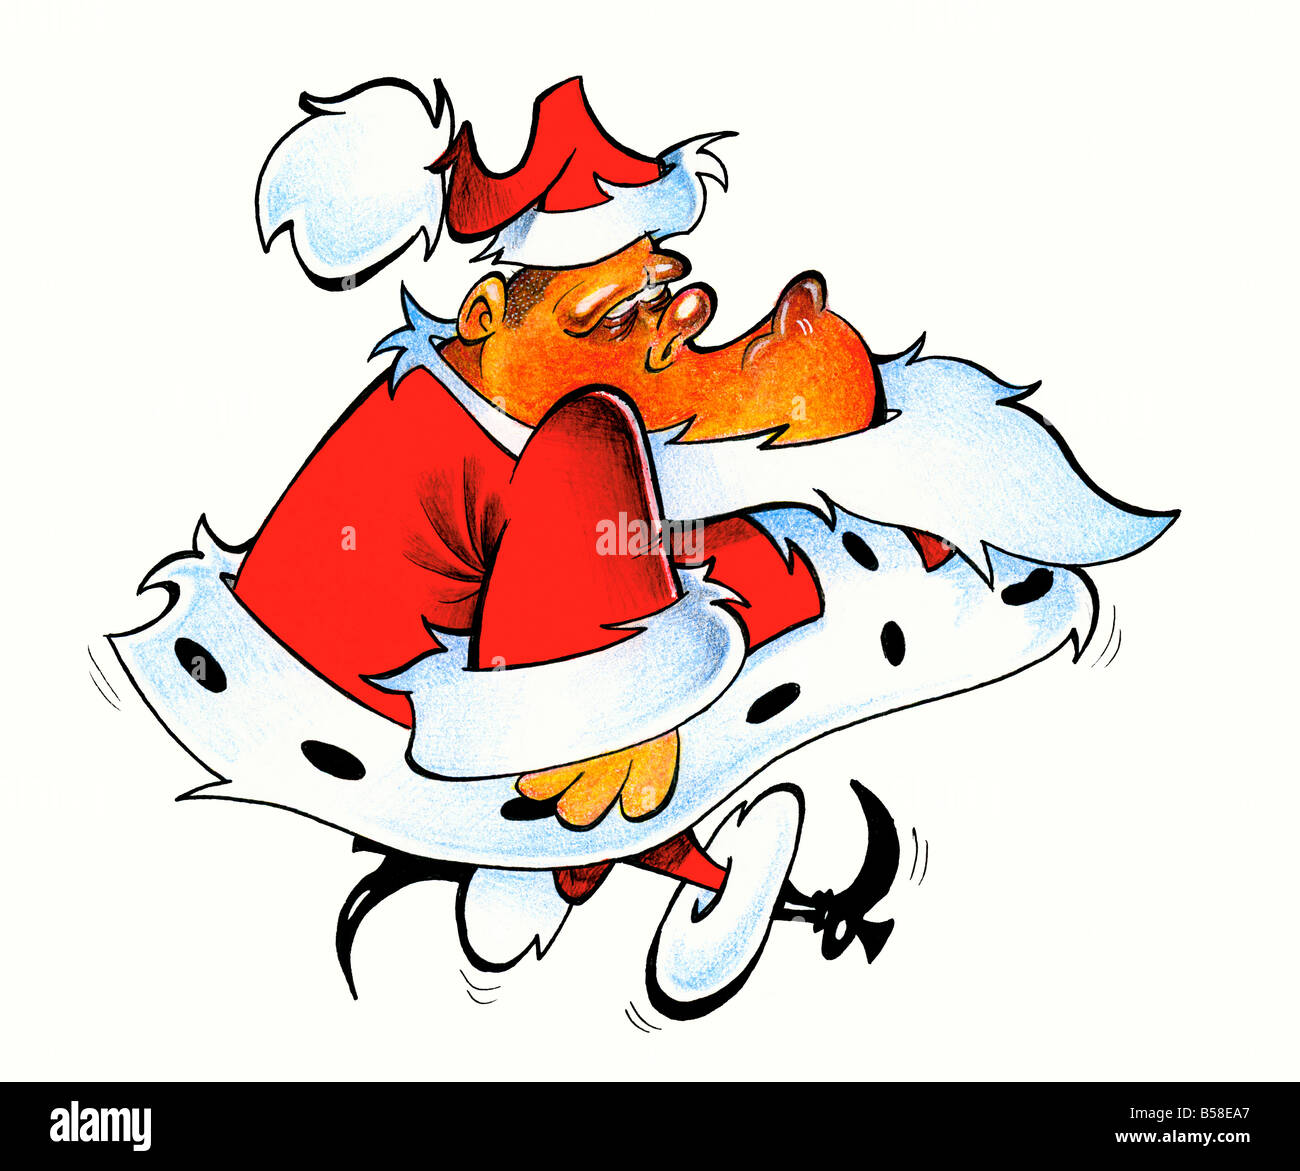 Santa Claus papá noel chris kringle malhumorado comprobar dos veces eve jolly vacaciones ho-ho-ho barba hat manto irmin botas rojas Foto de stock